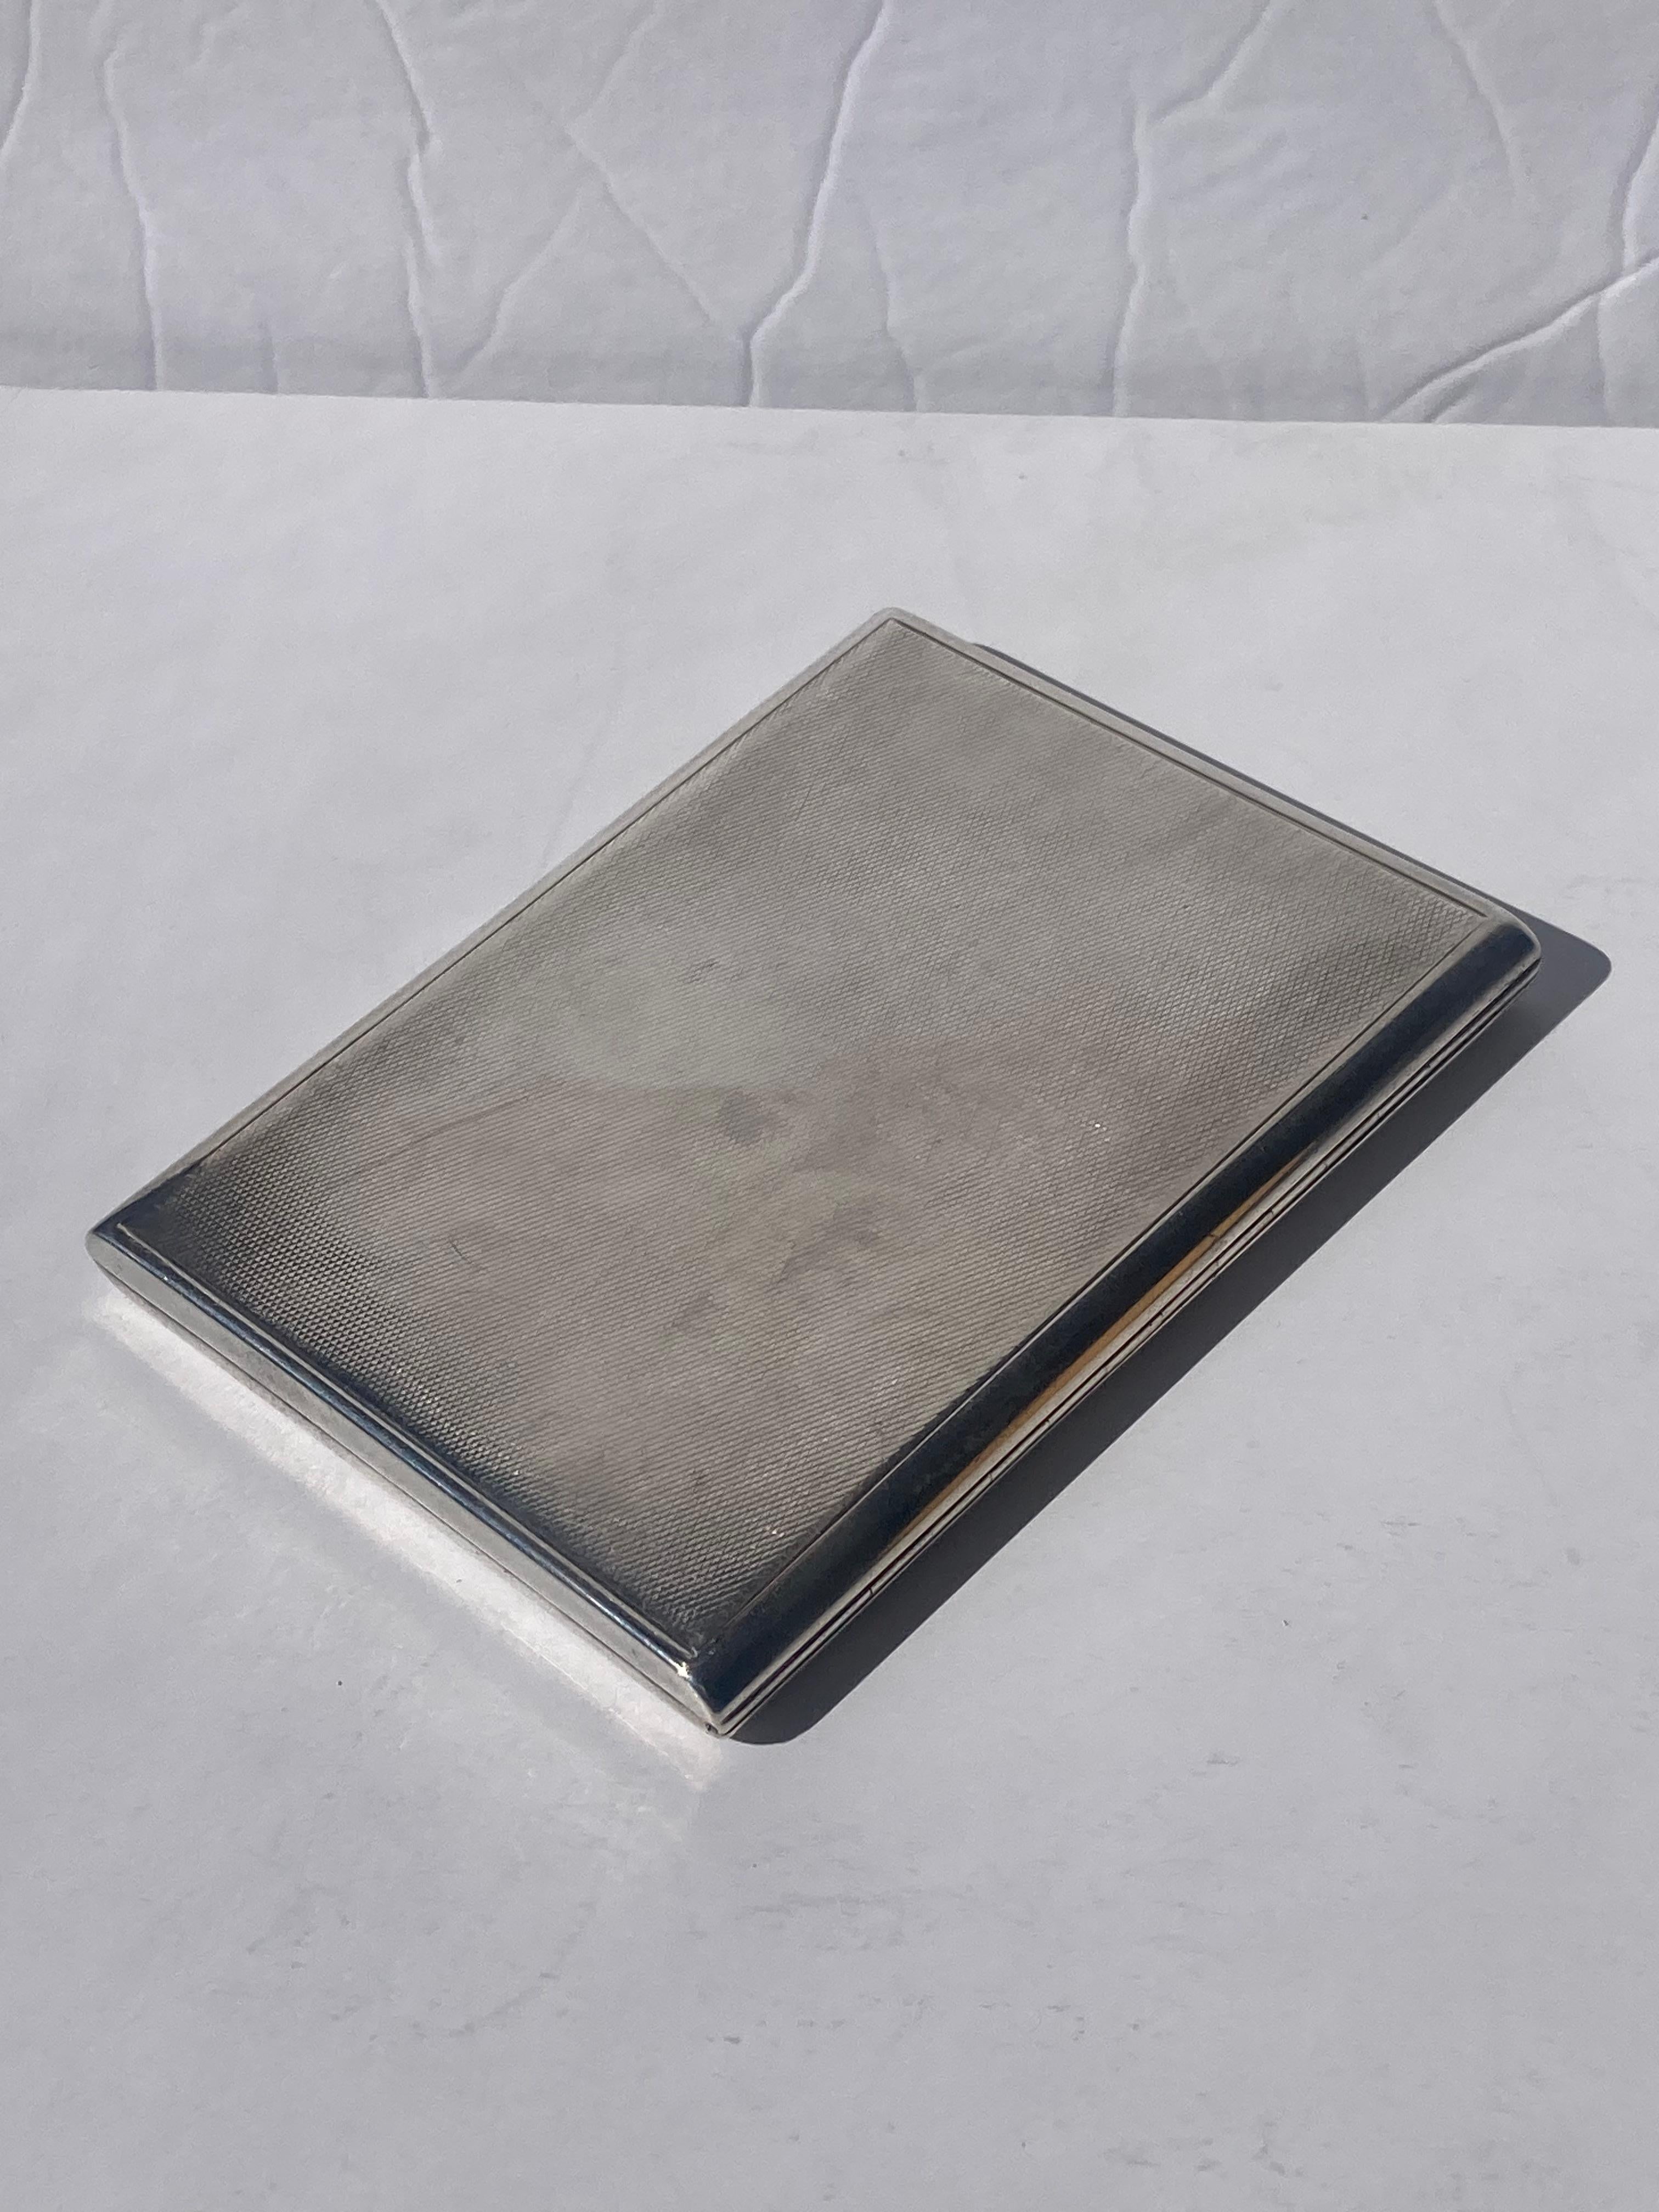 Metalwork Asprey sterling silver cigarette / card case, slide opens Pat 21914 For Sale